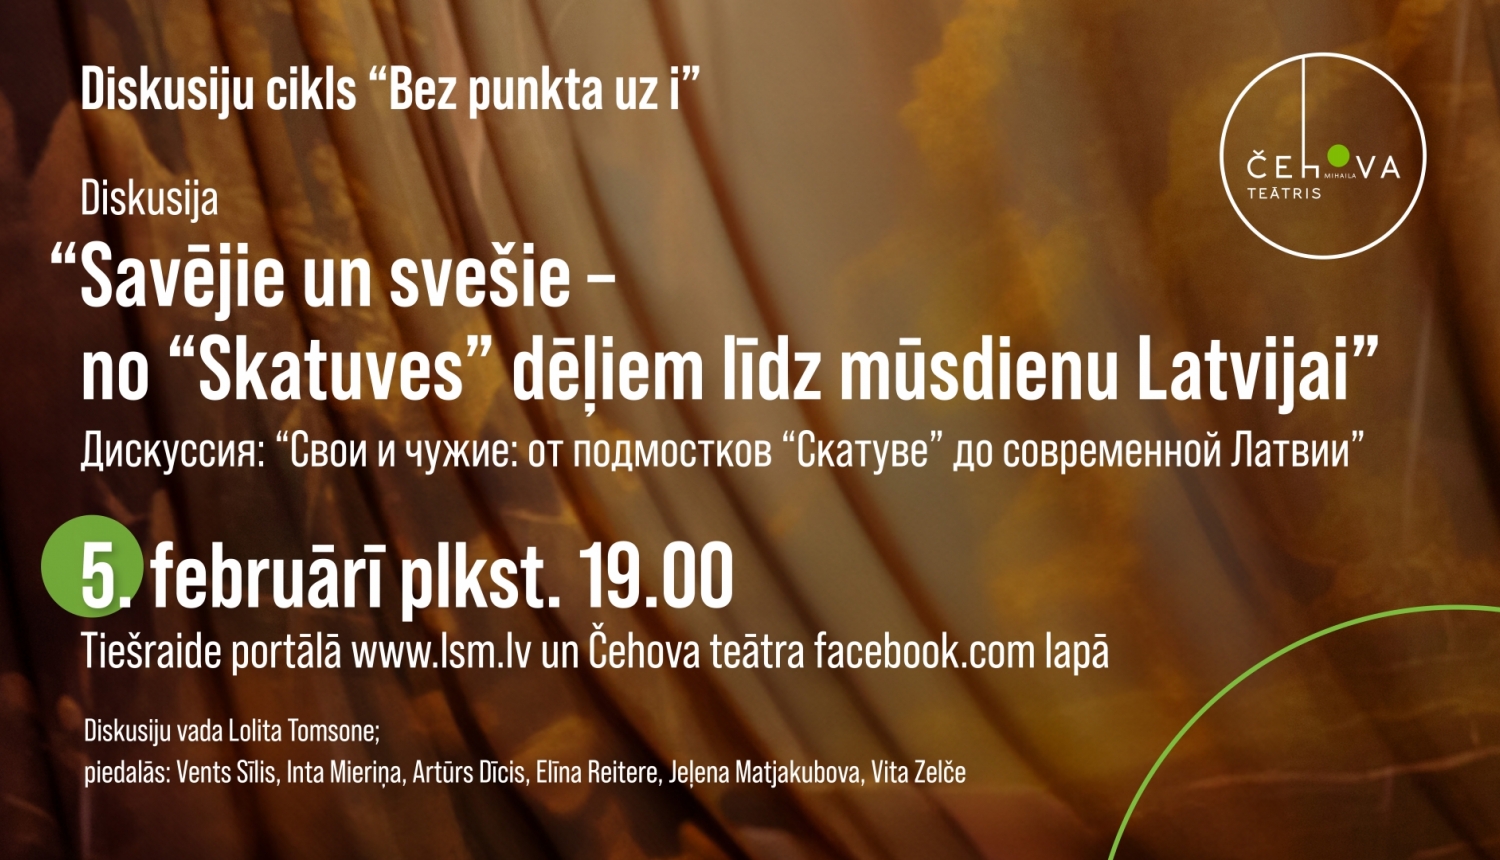 Teksts: Trešā tiešsaistes diskusija par neērtiem, bet aktuāliem jautājumiem Čehova teātrī jau 5. februārī